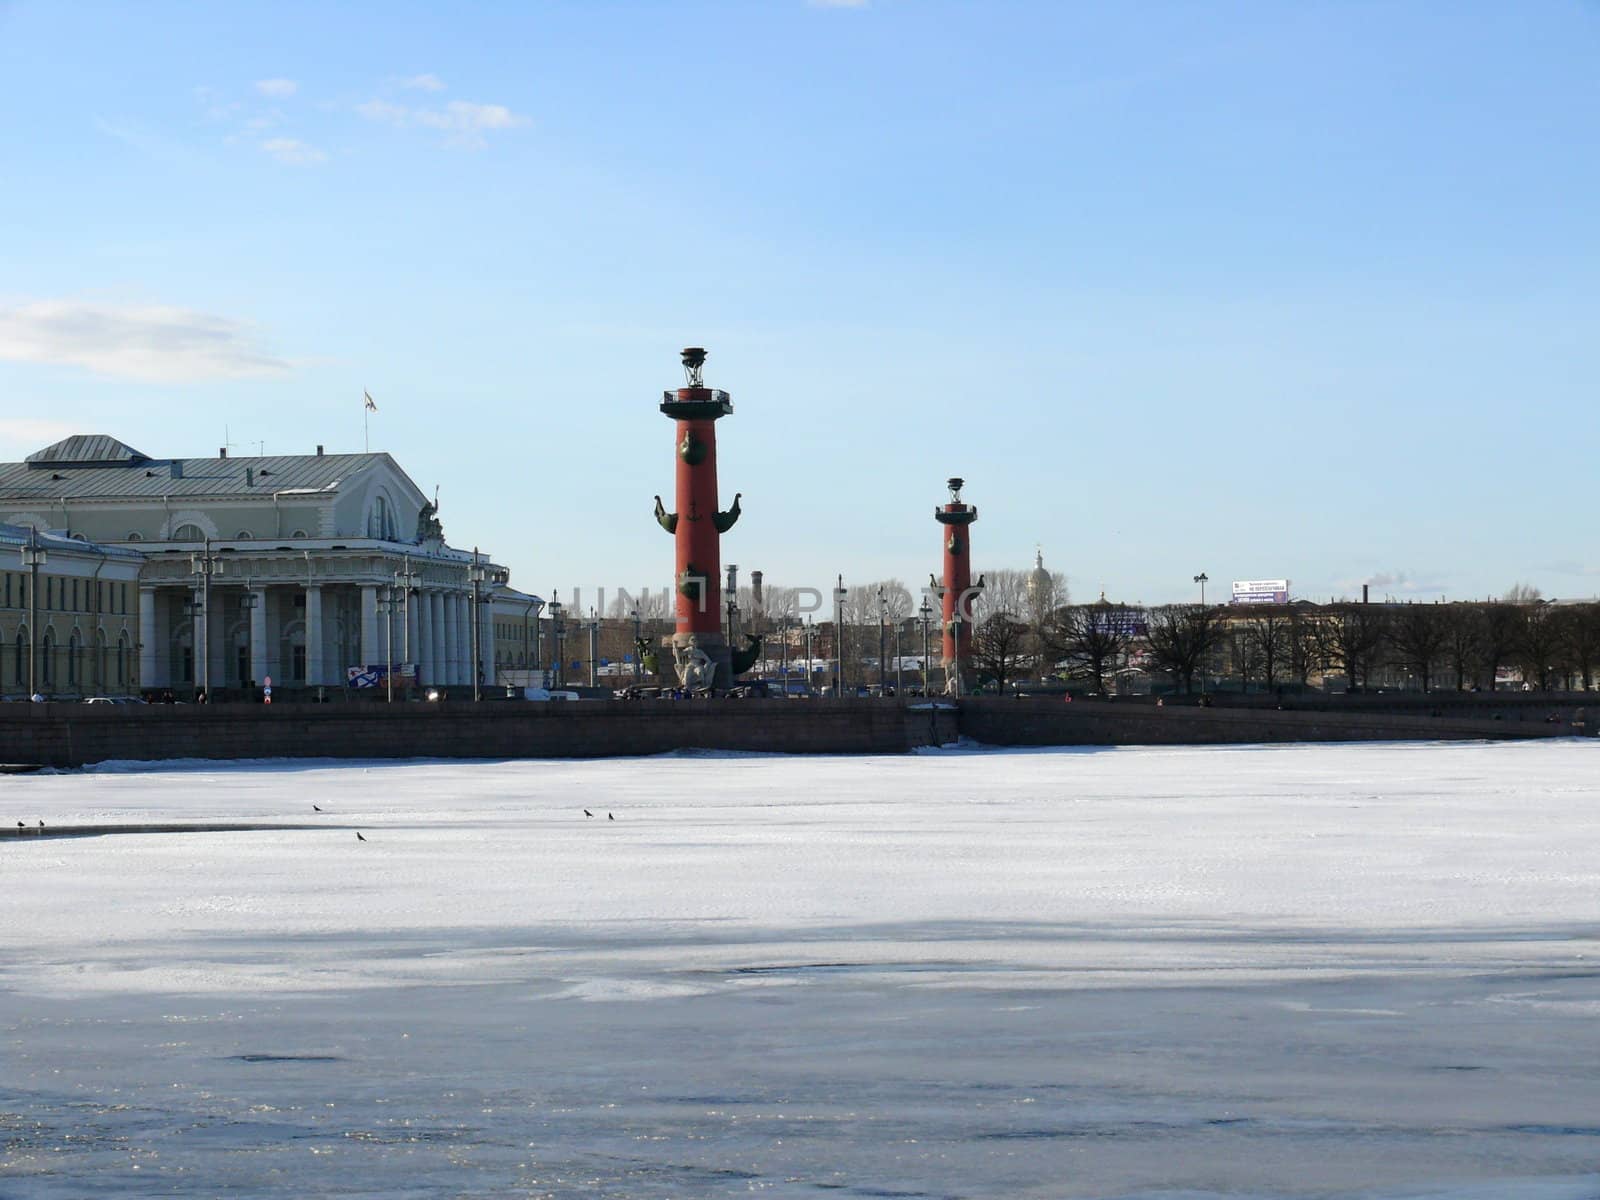 Birzhevaya embankment in Saint-Petersburg, Russia by Stoyanov